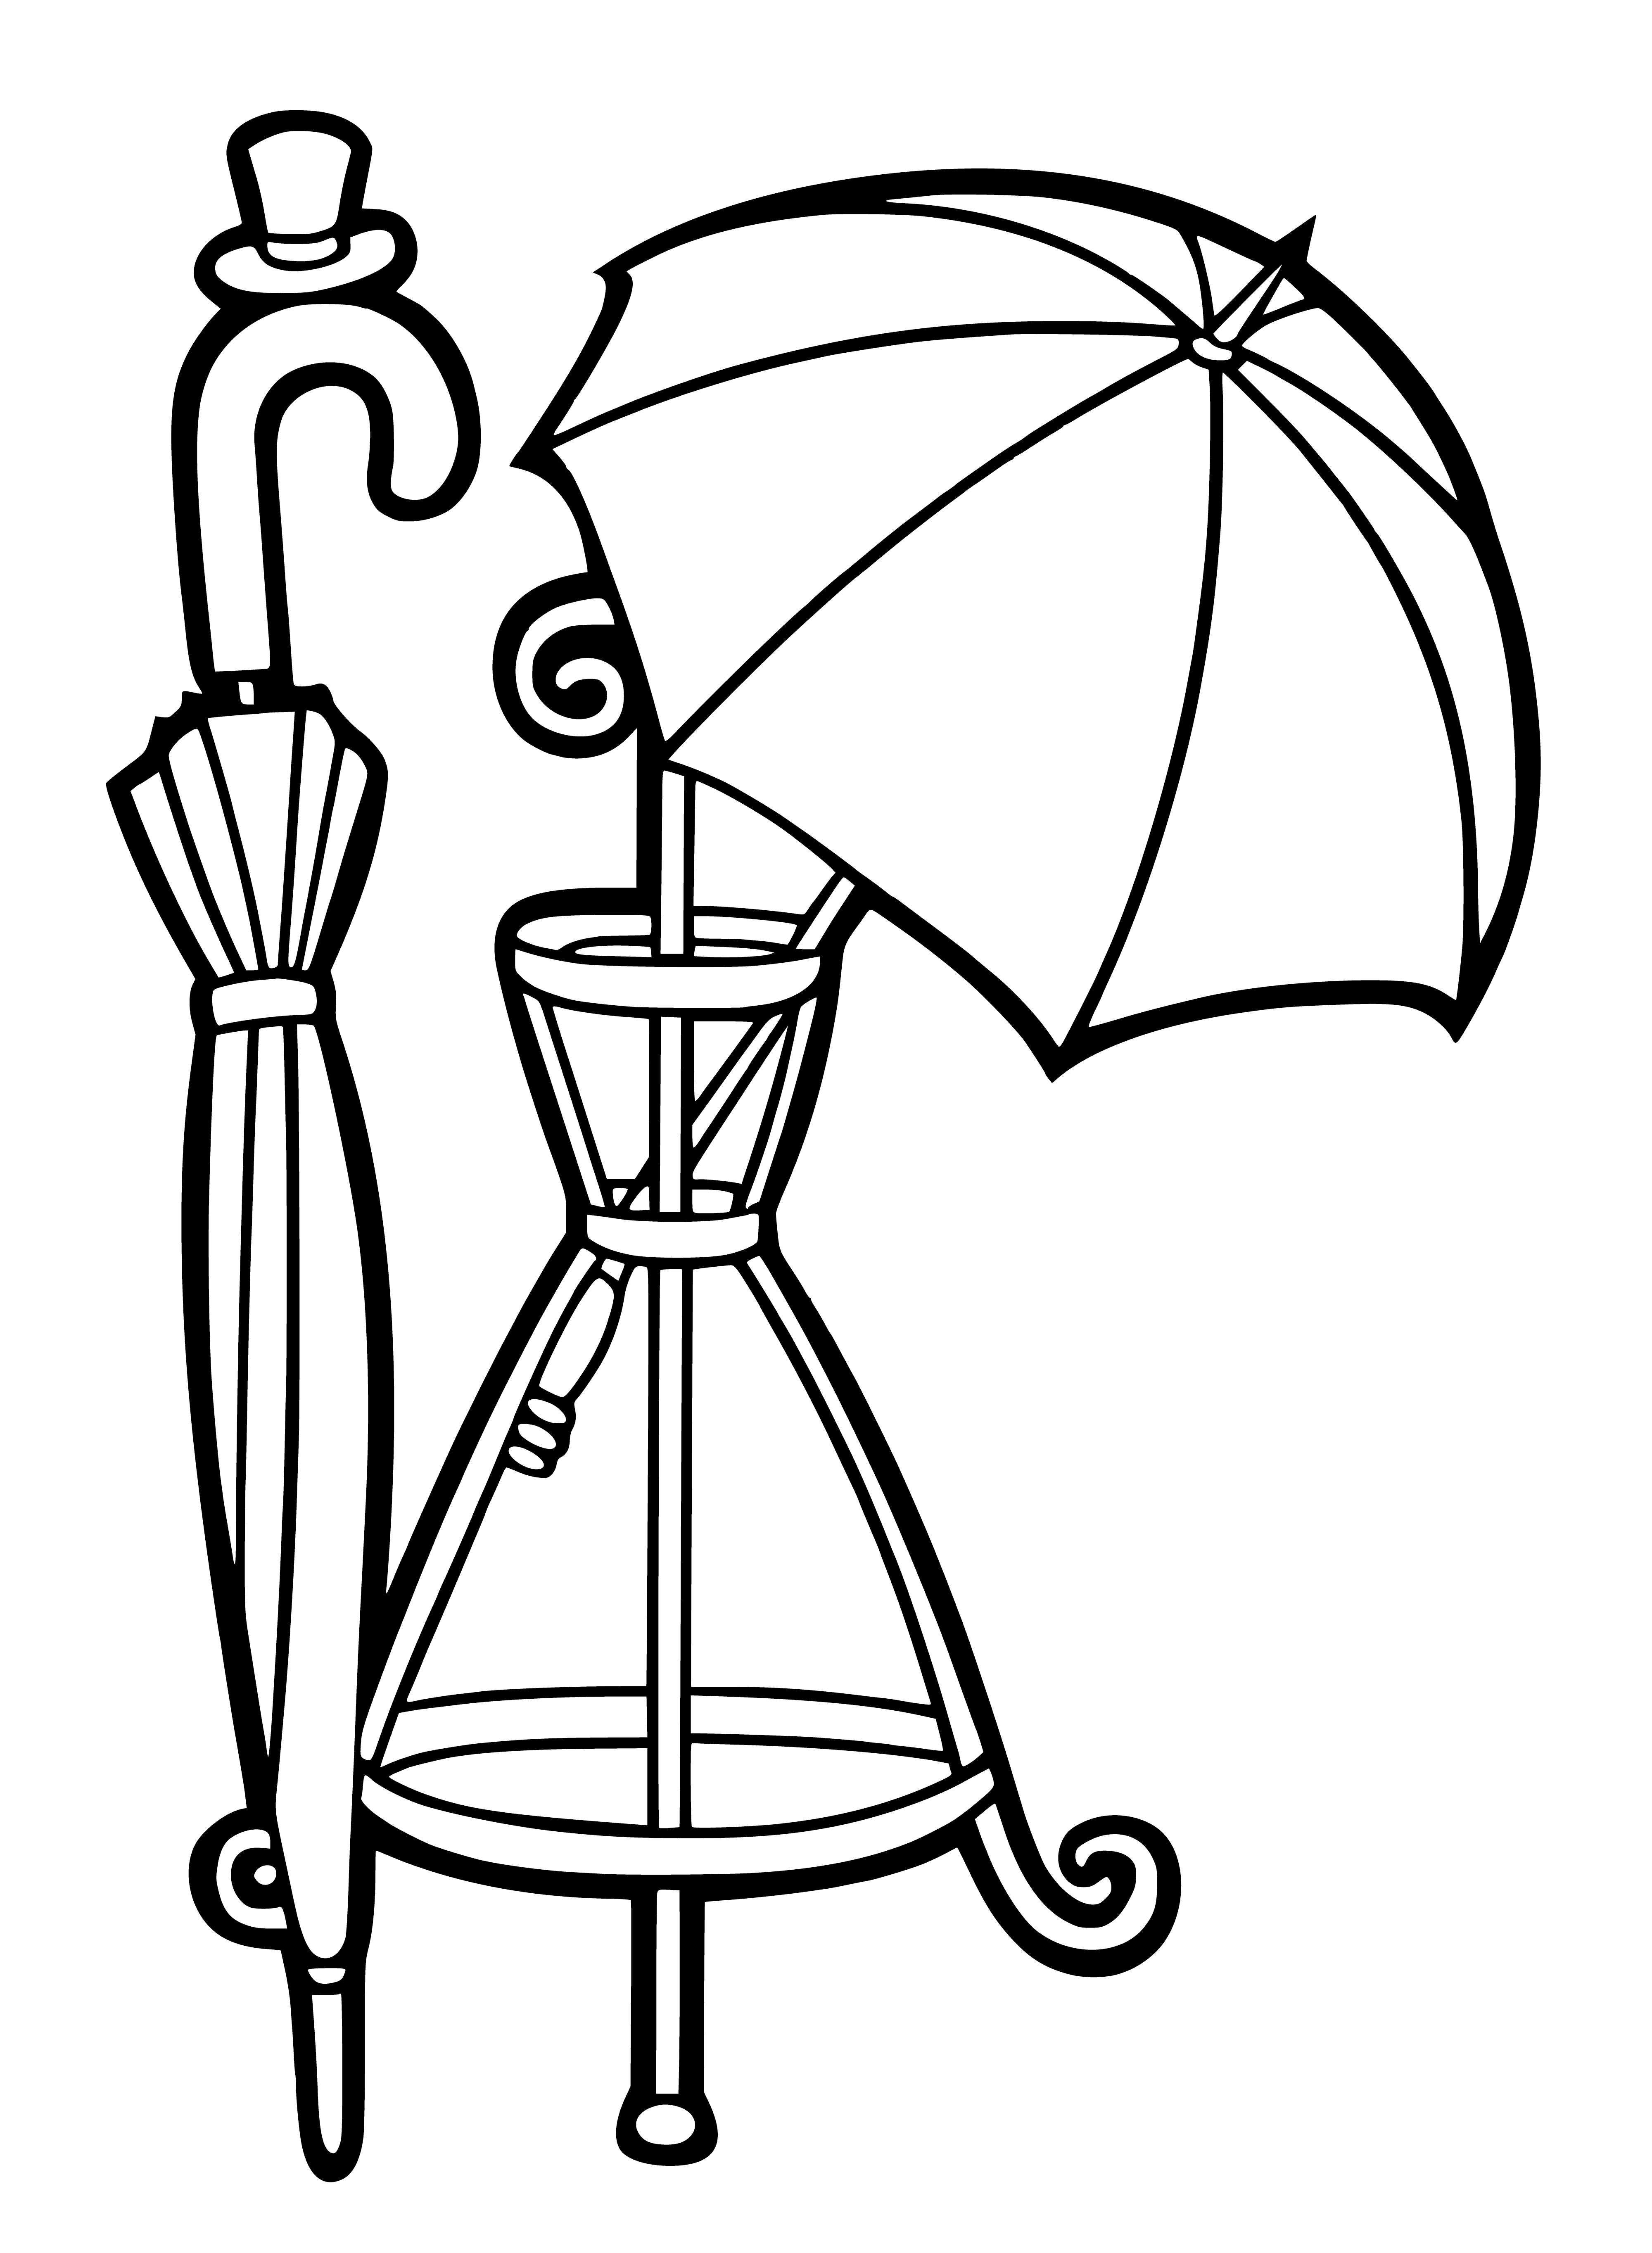 Umbrella hanger coloring page